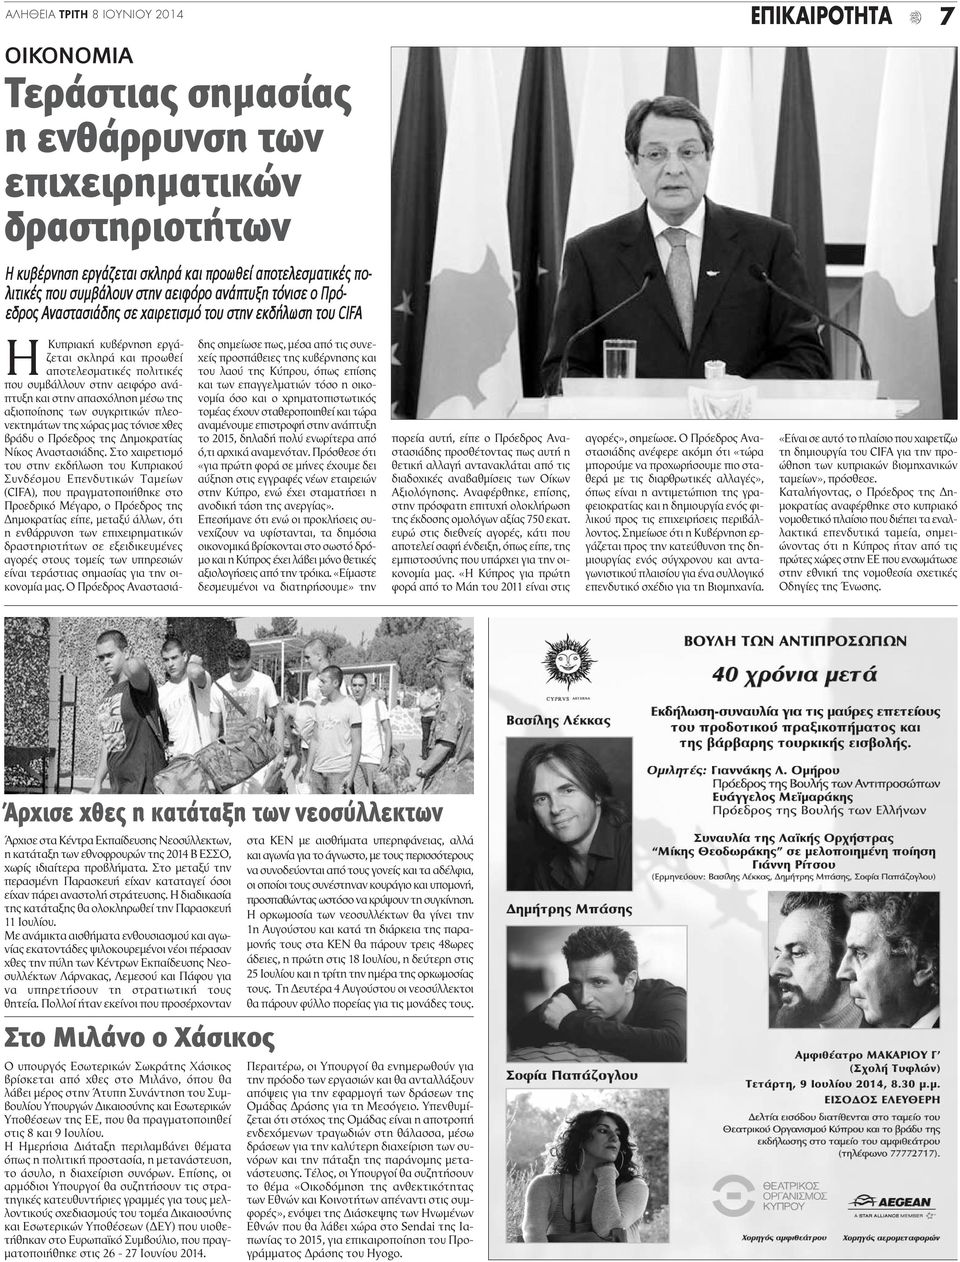 στην απασχόληση μέσω της αξιοποίησης των συγκριτικών πλεονεκτημάτων της χώρας μας τόνισε χθες βράδυ ο Πρόεδρος της Δημοκρατίας Νίκος Αναστασιάδης.